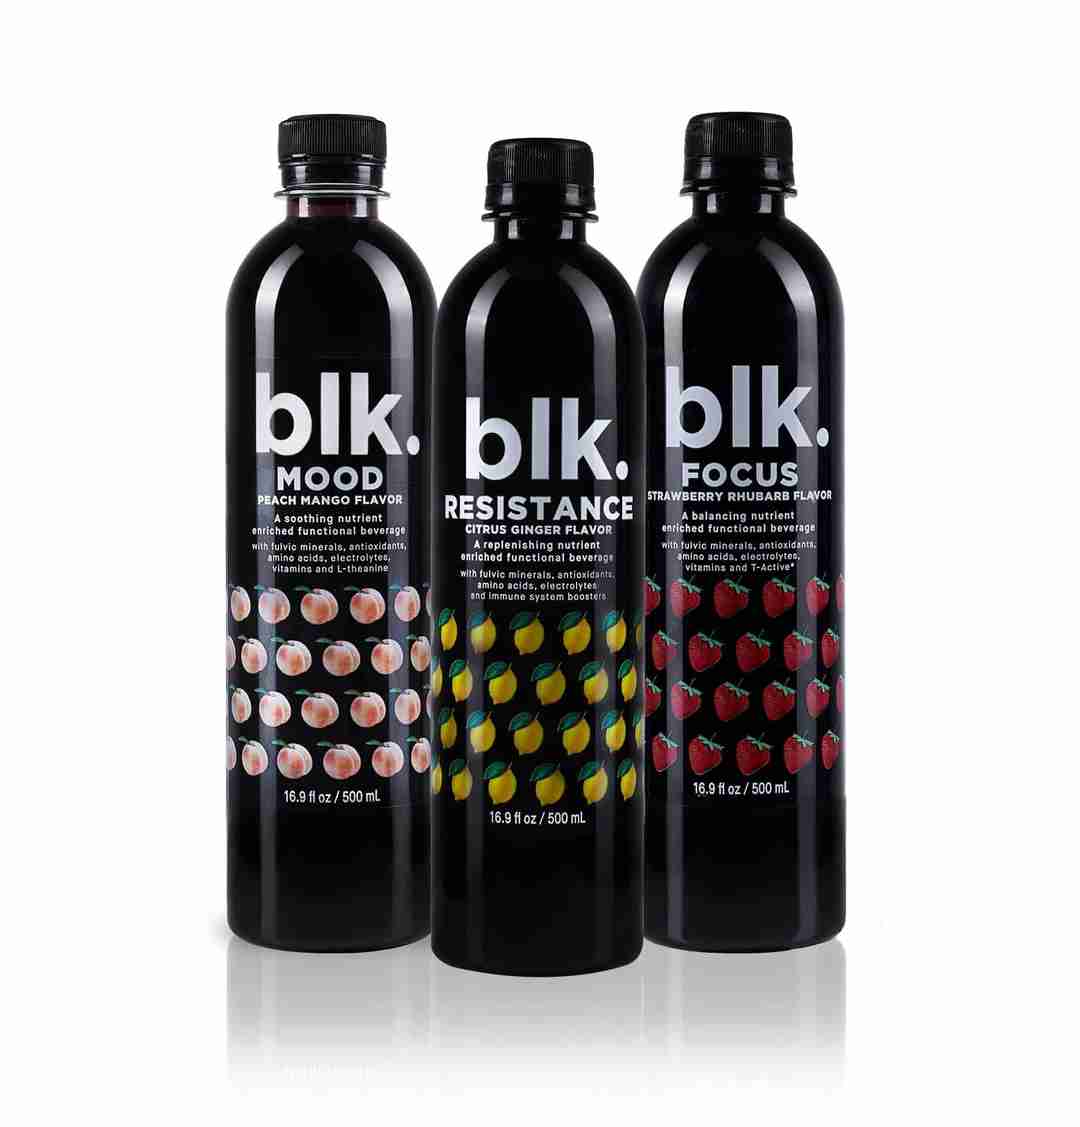 blk. All Natural Alkaline Functional Beverages